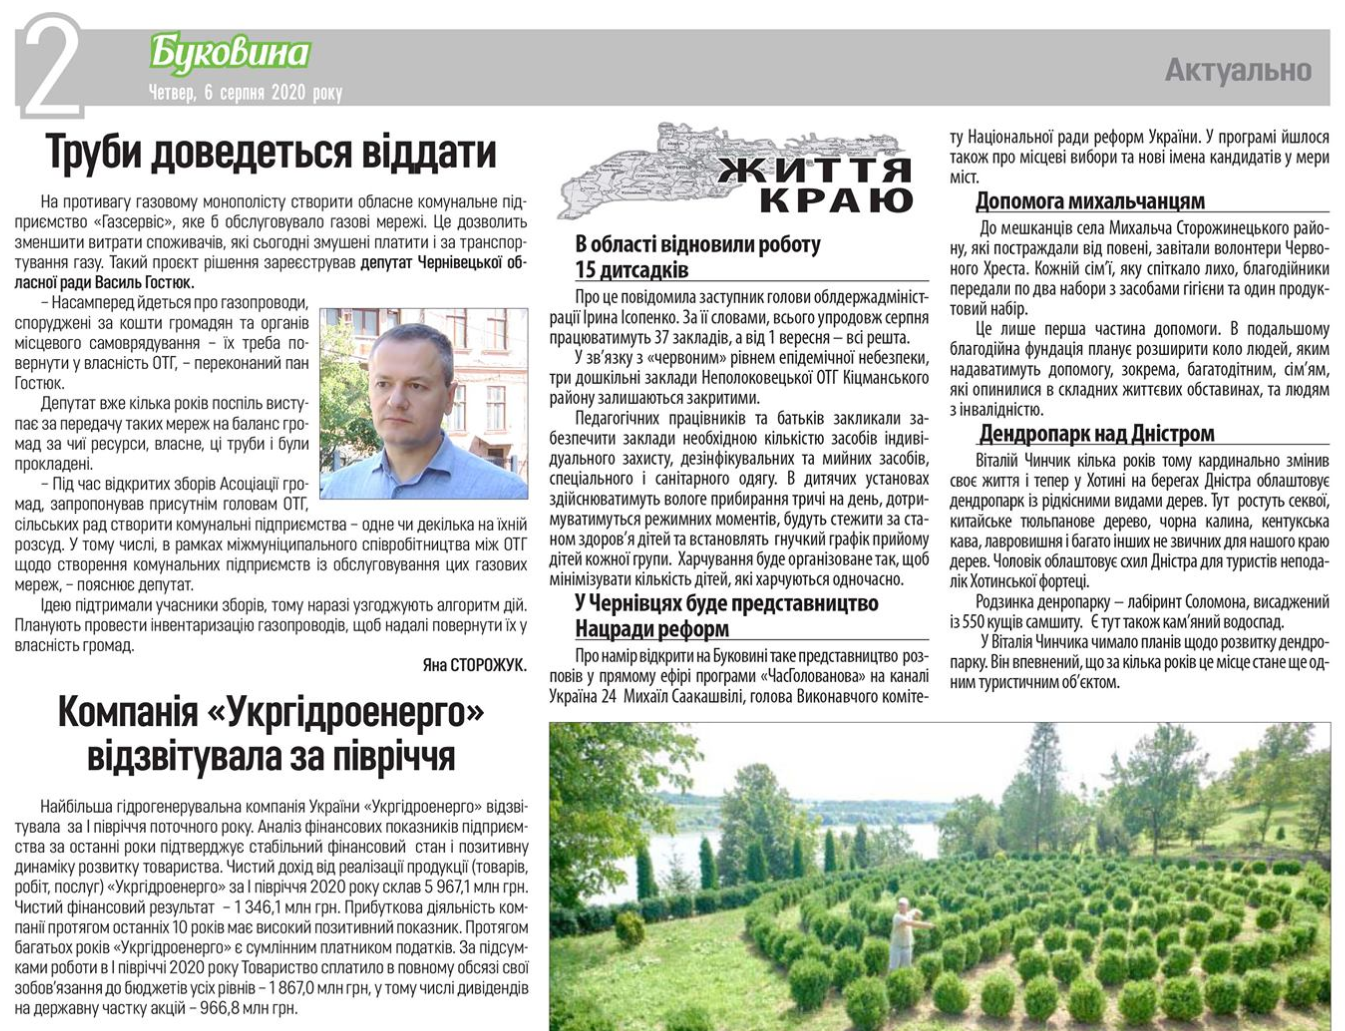 Буковина: Компанія "Укргідроенерго" відзвітувала за півріччя